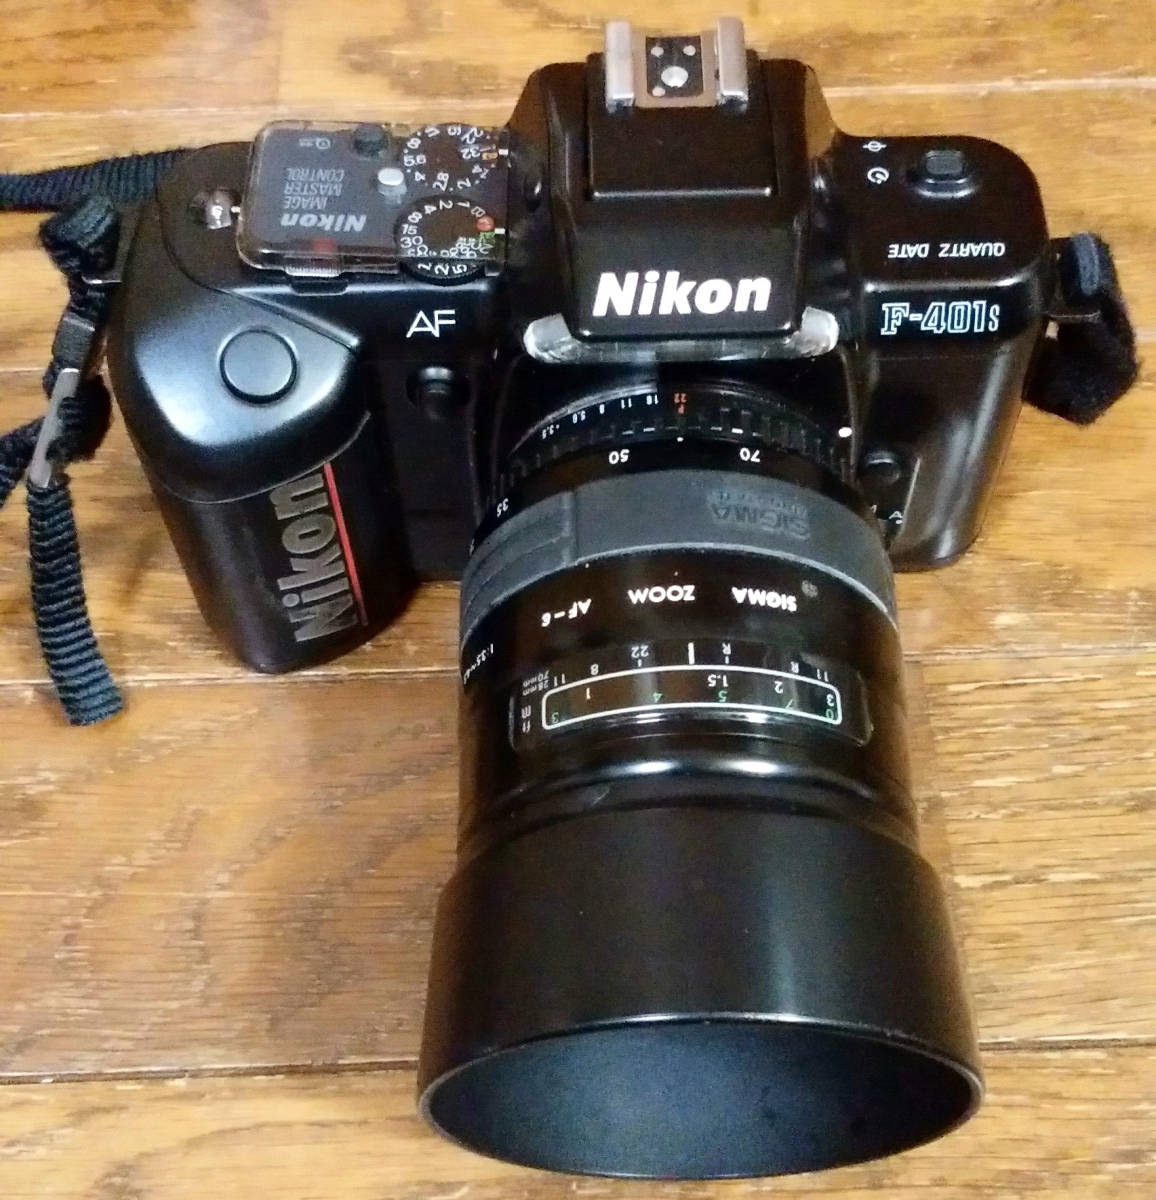 Nikon ニコン 一眼レフ フィルムカメラ F-401s レンズ シグマ ZOOM AF-ε 1:3.5-4.5 f=28-70mm AF-E_画像1